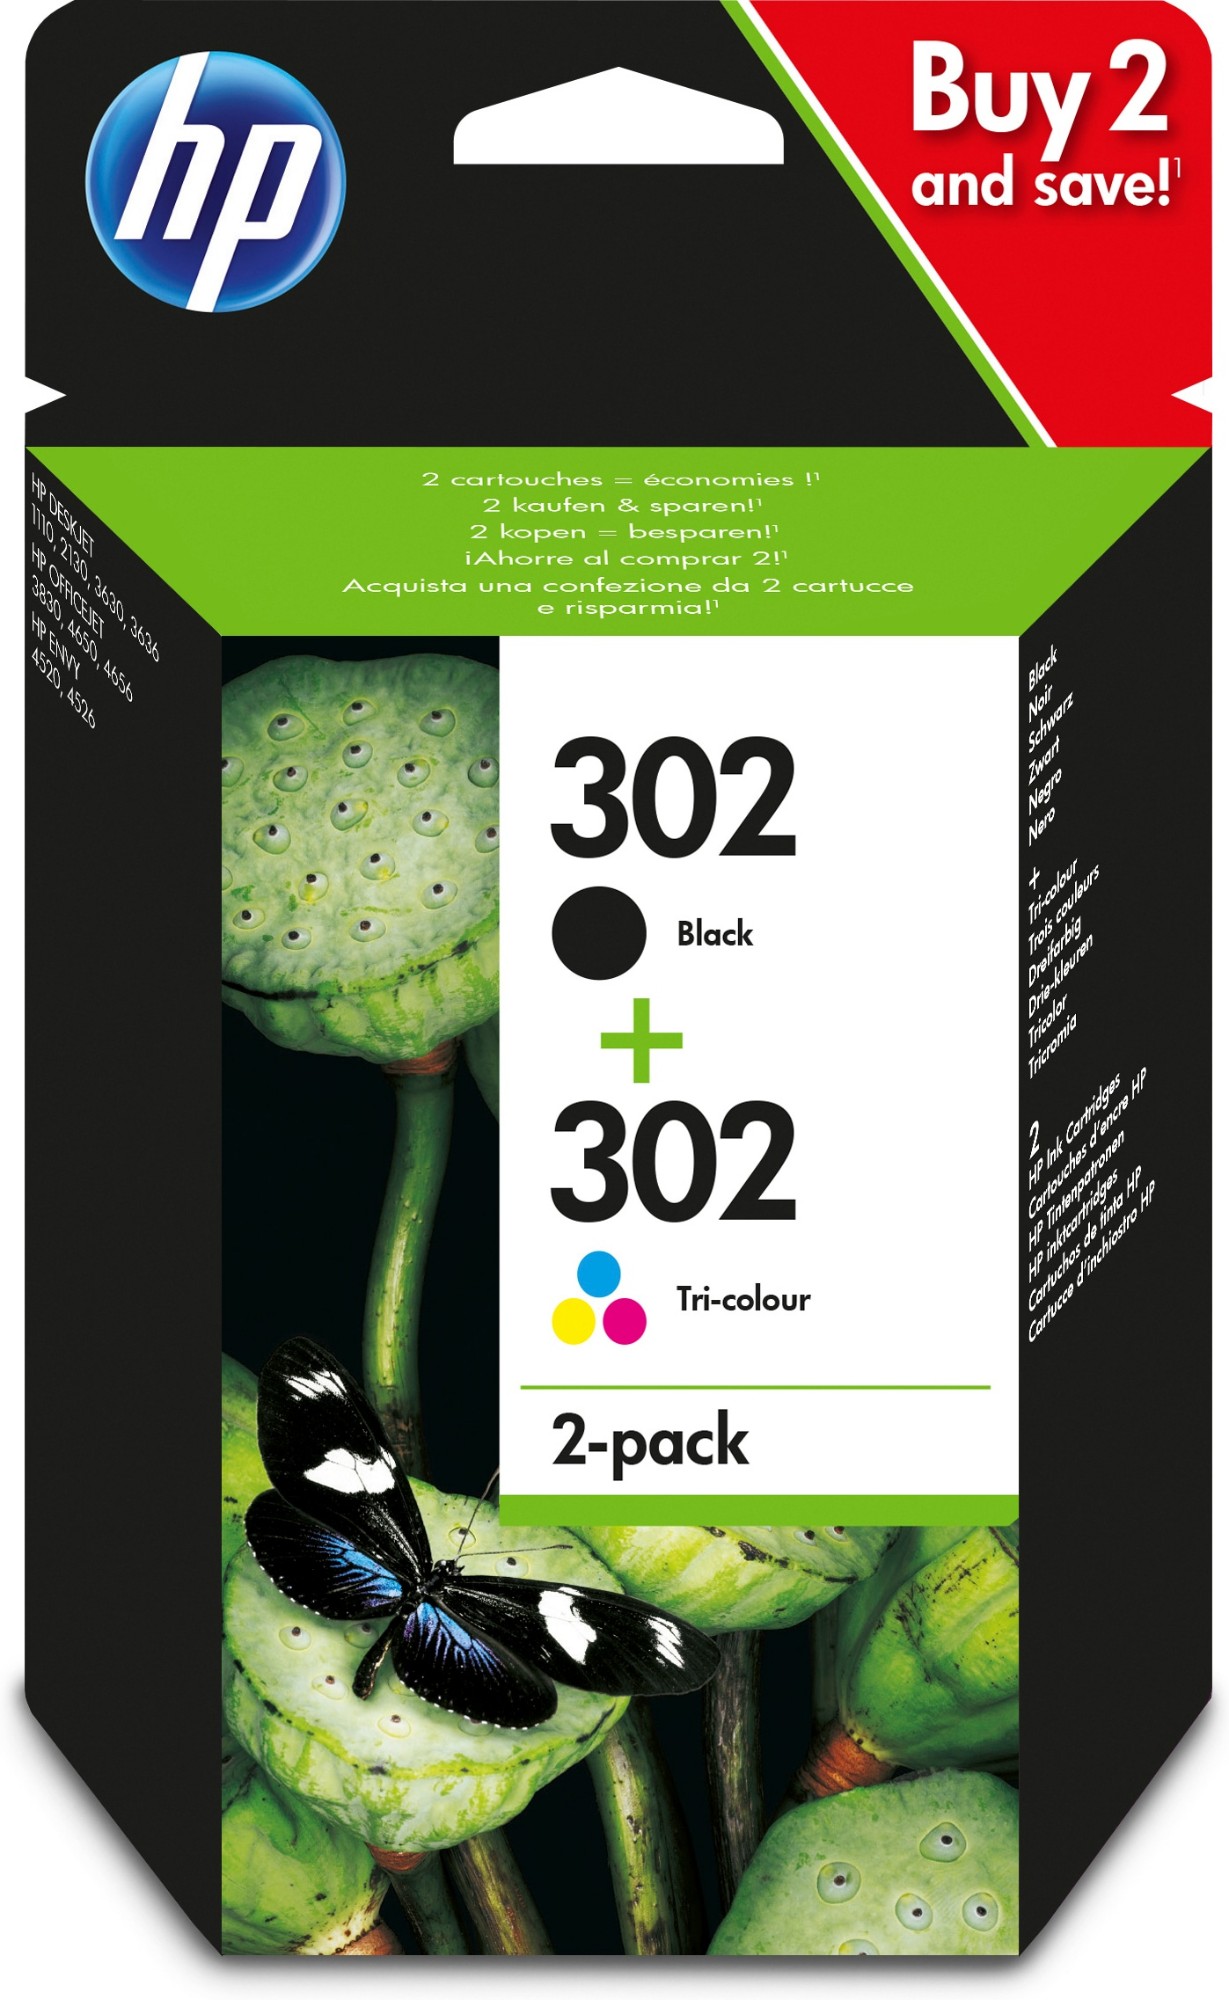 HP Paquete de ahorro de 2 cartuchos de tinta original 302 negro/tricolor